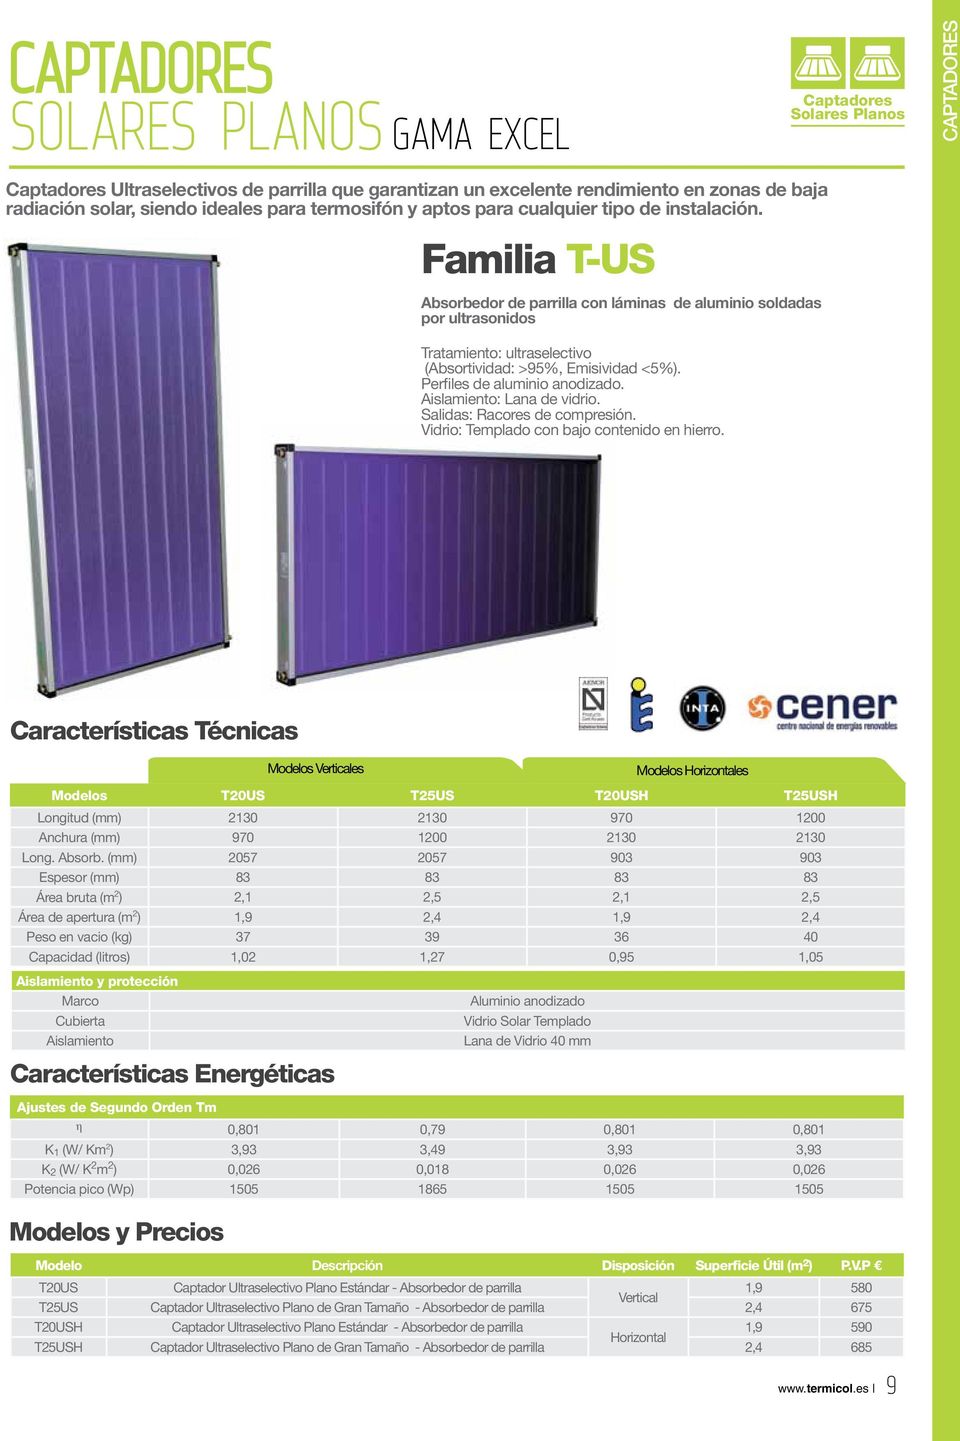 Familia T-US Absorbedor de parrilla con láminas de aluminio soldadas por ultrasonidos Tratamiento: ultraselectivo (Absortividad: >95%, Emisividad <5%). Perfiles de aluminio anodizado.